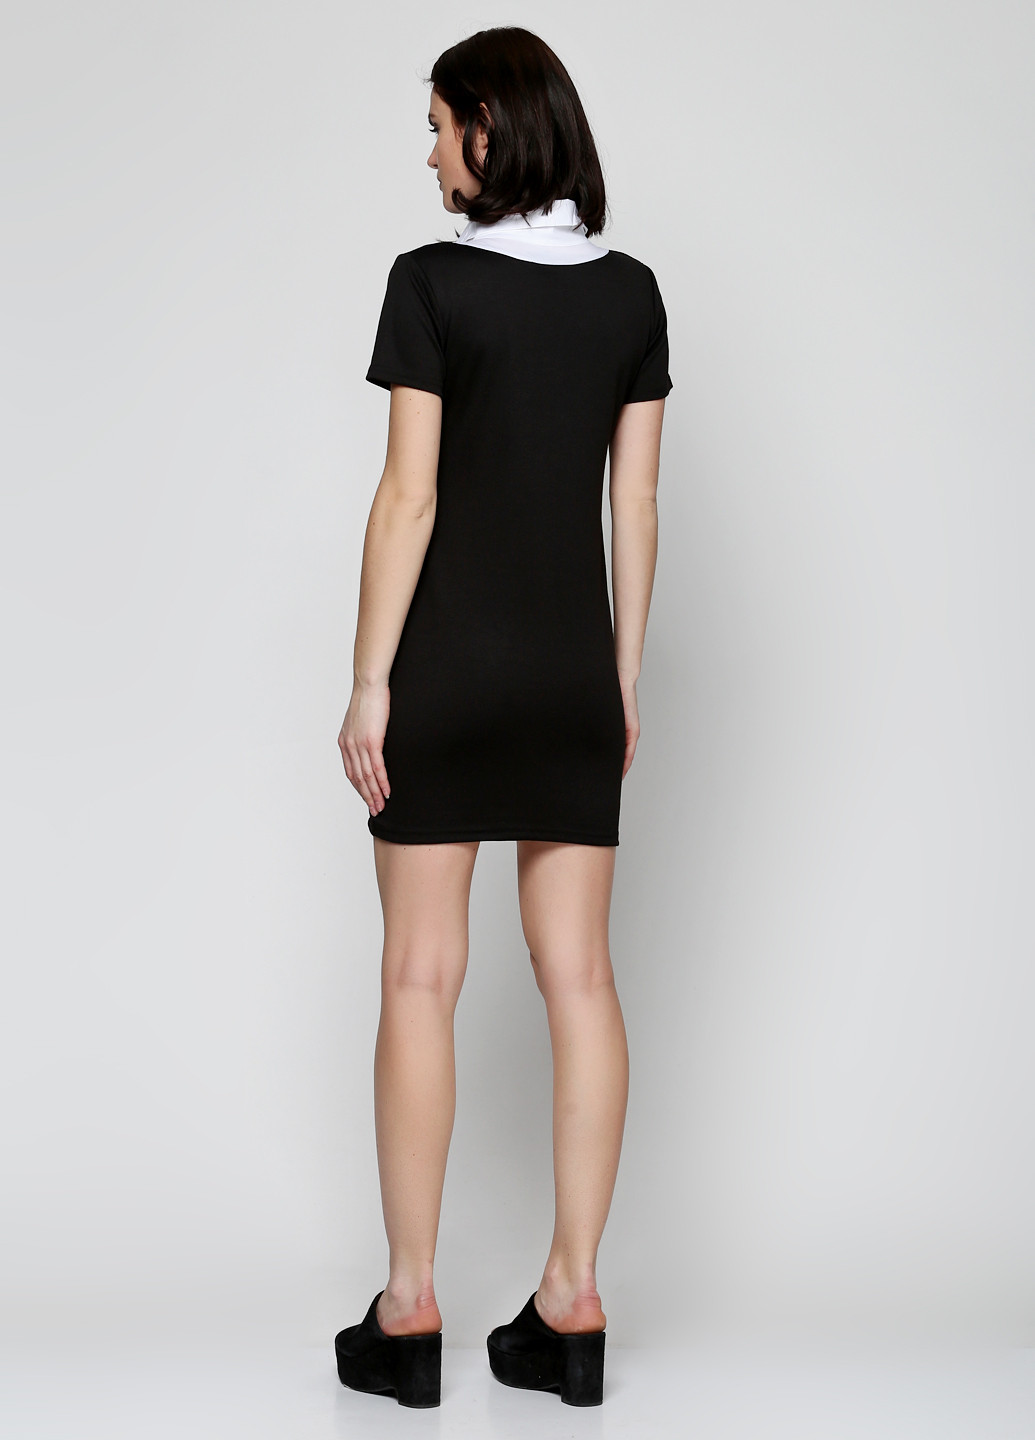 Черное деловое платье короткое Колибри S однотонное